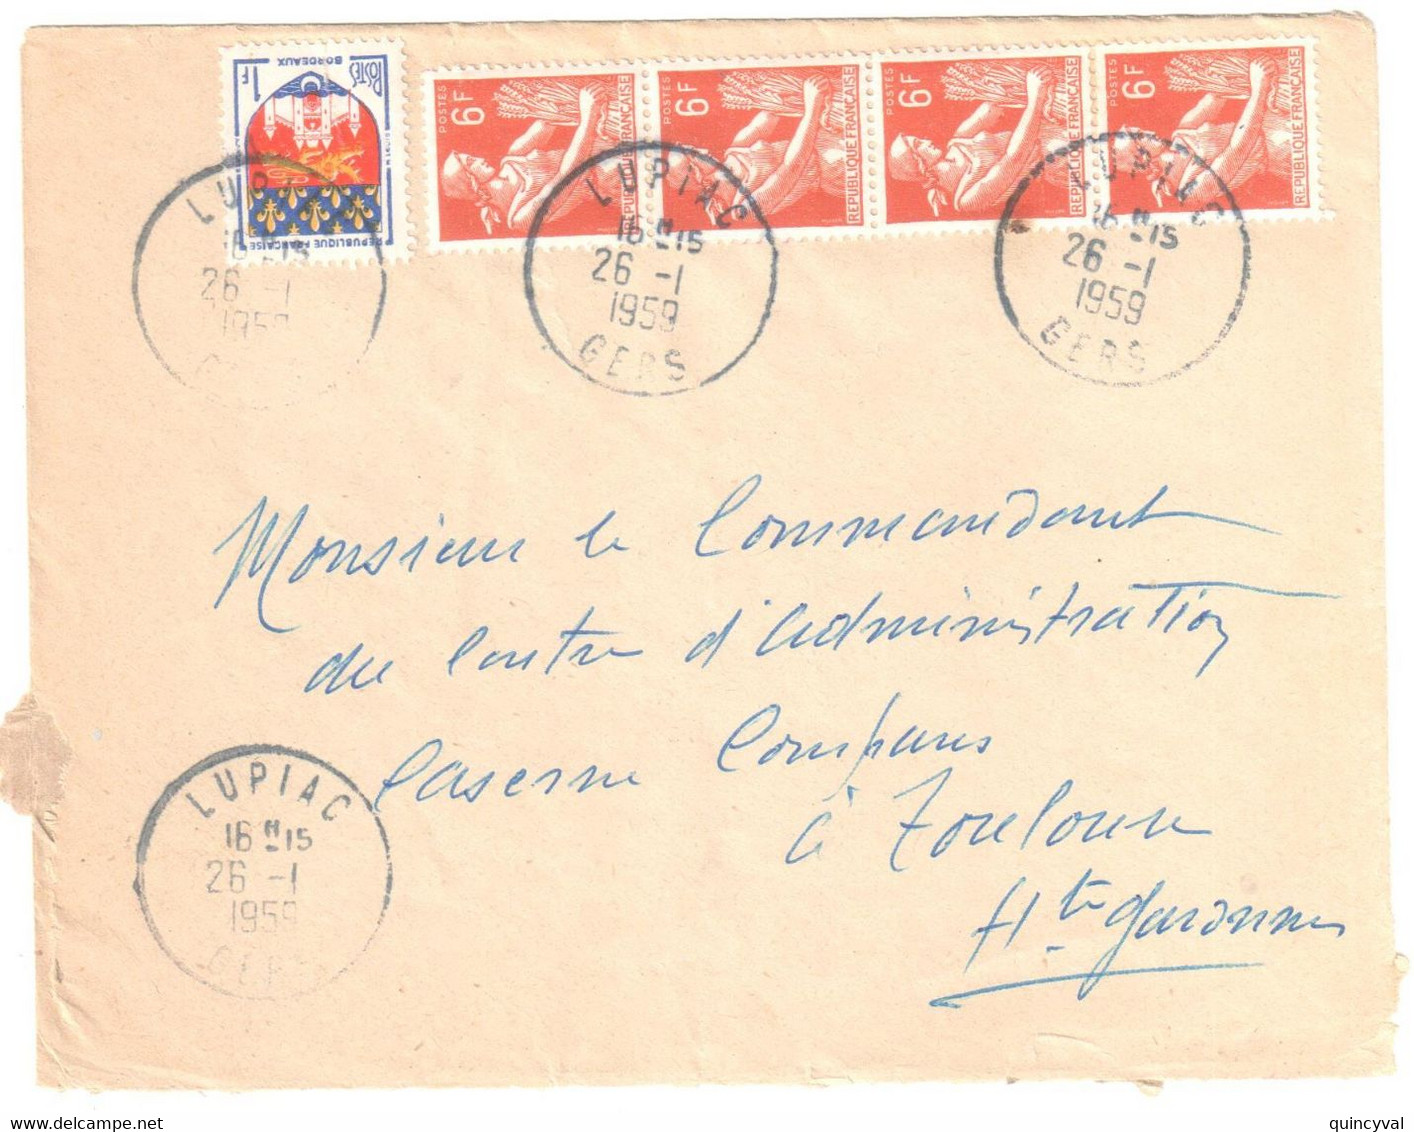 LUPIAC Gers Lettre 6 F Moissonneuse Bande De 4 1F Blason Bordeaux Ob 26 1 1959 Yv 1183 1115 - Lettres & Documents